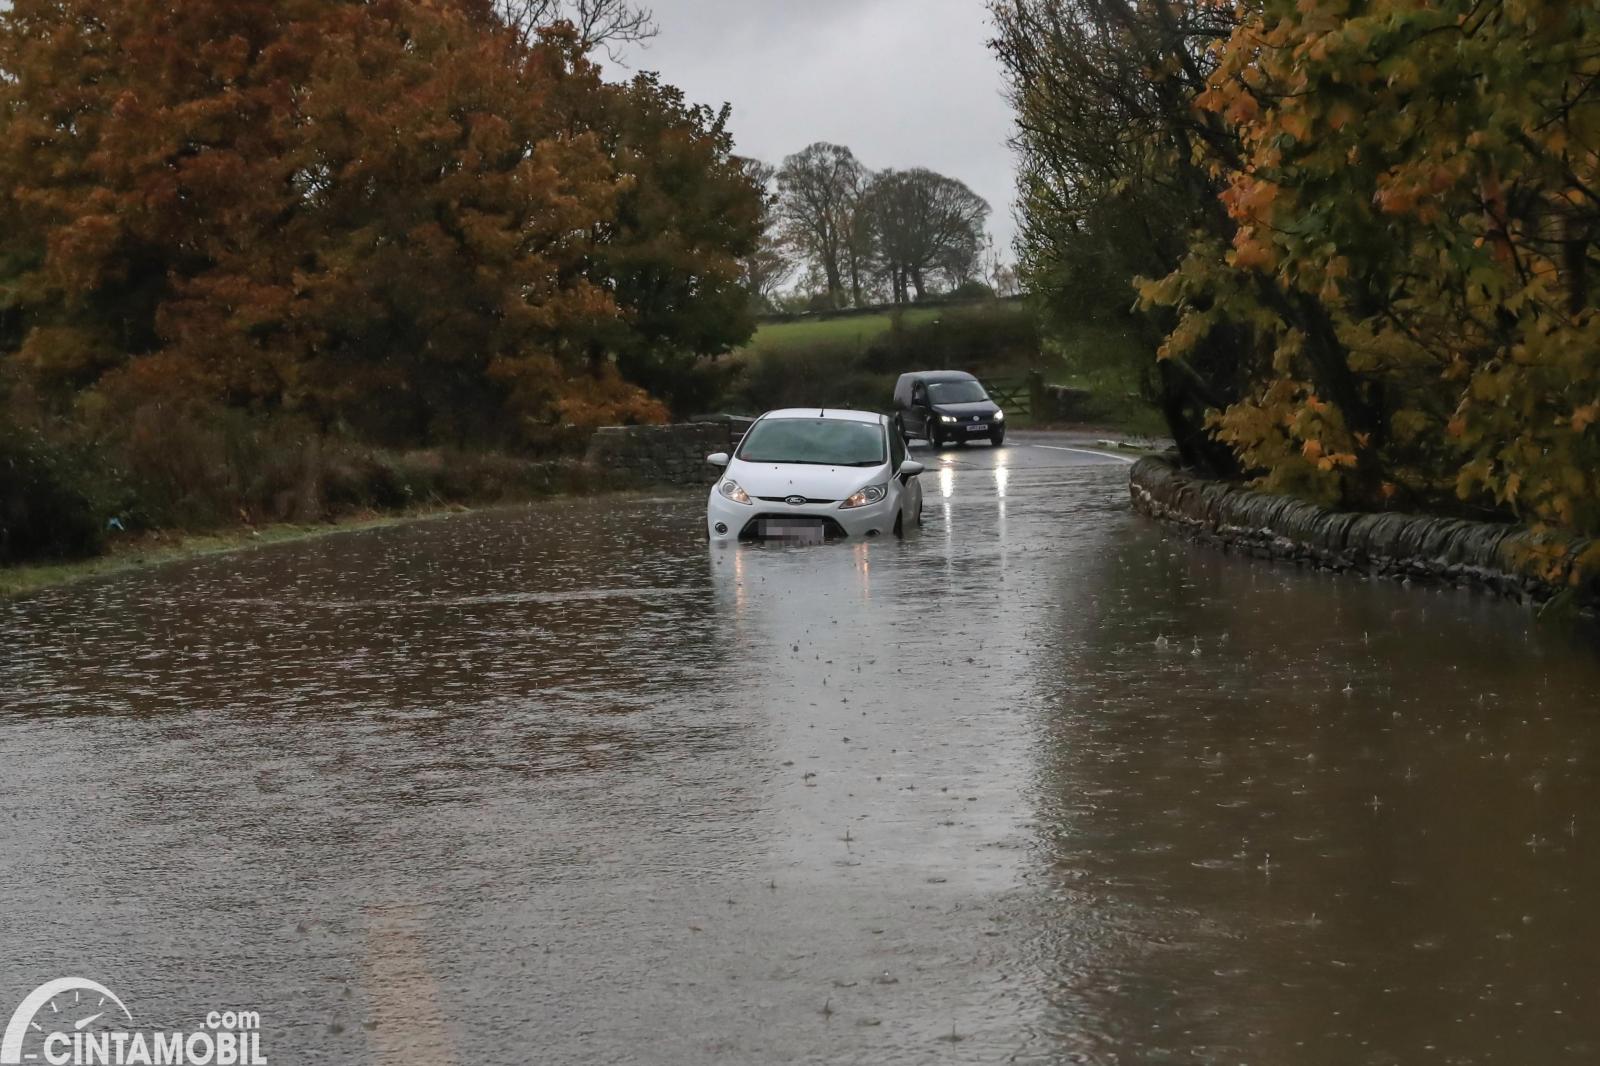 Ini Cara Aman Dan Mudah Melewati Jalan Tergenang Banjir